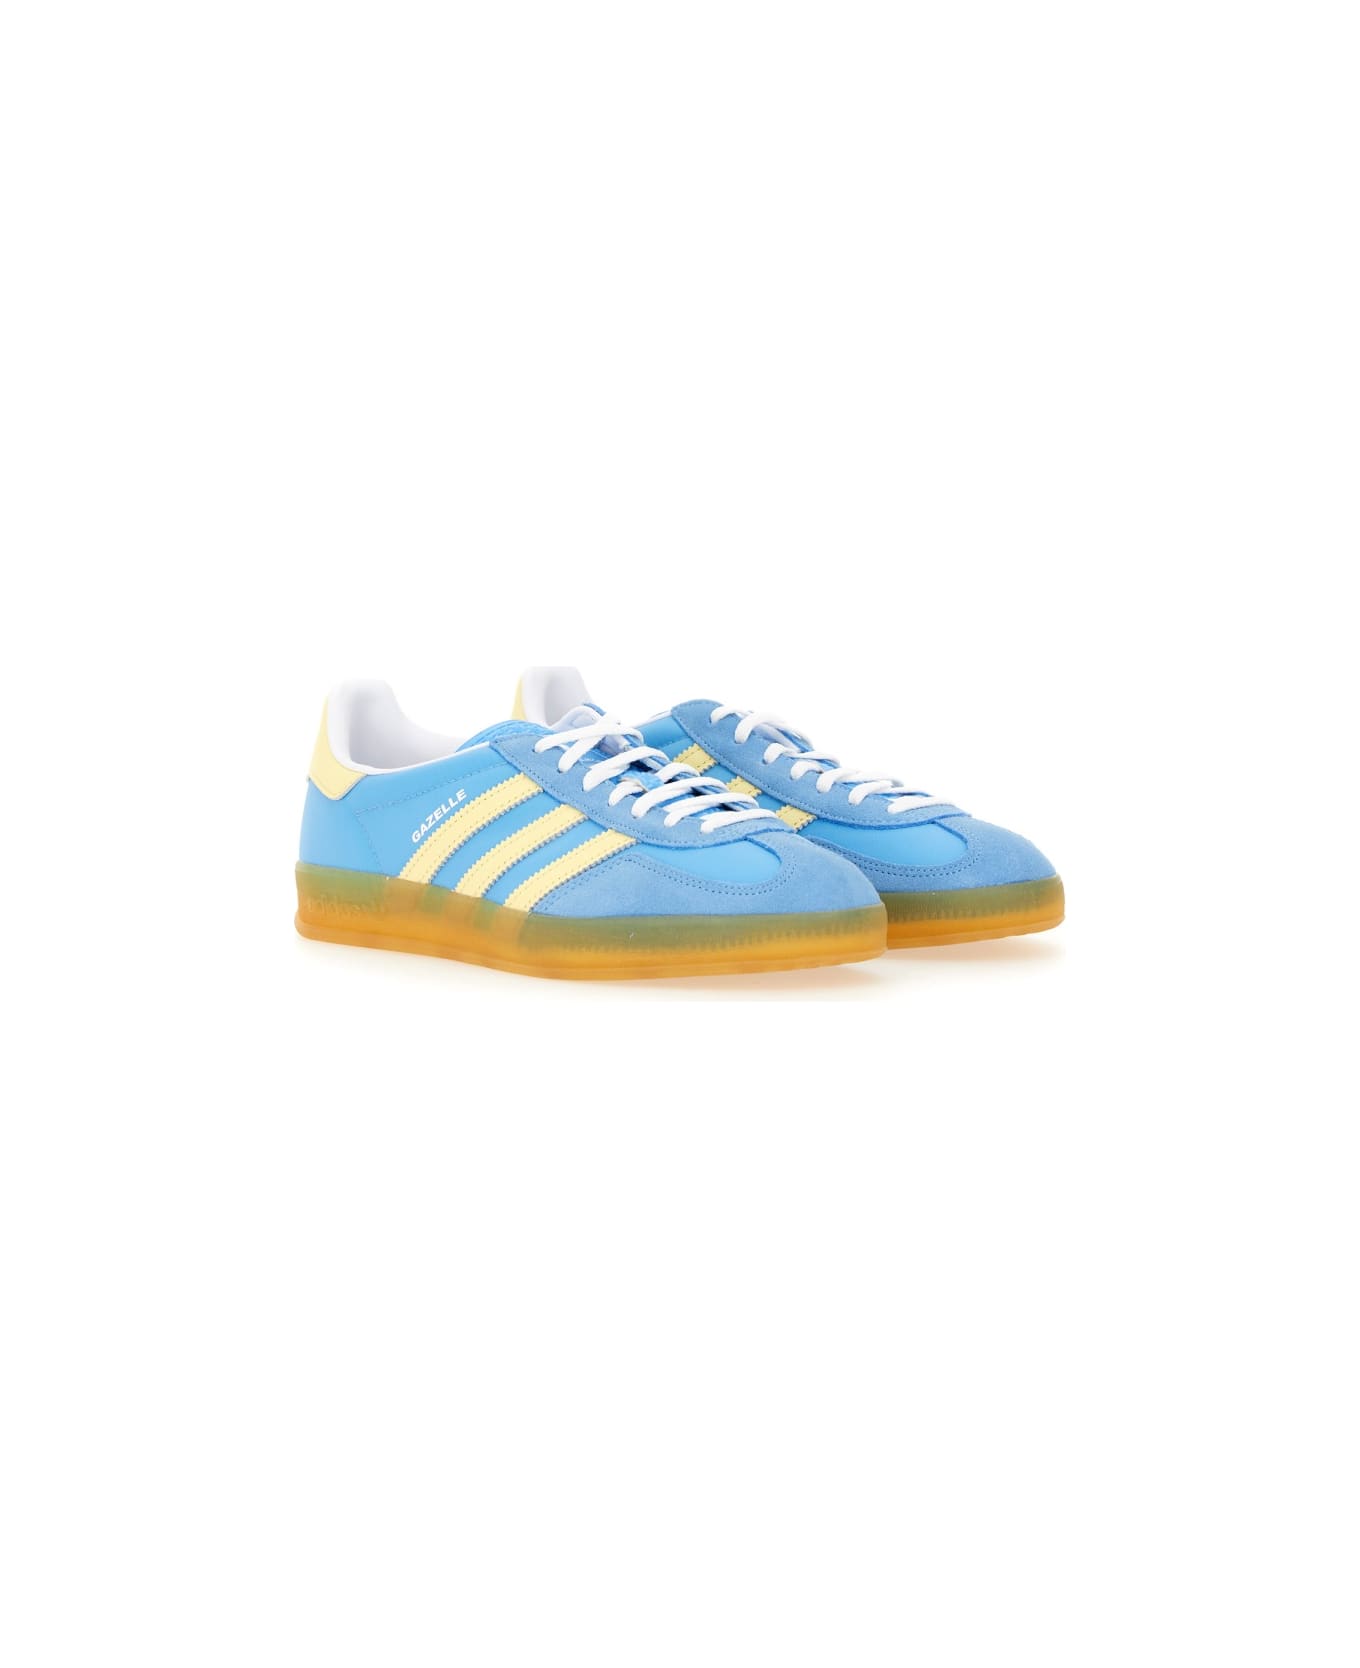 Adidas Originals "gazelle" Sneaker - BABY BLUE スニーカー